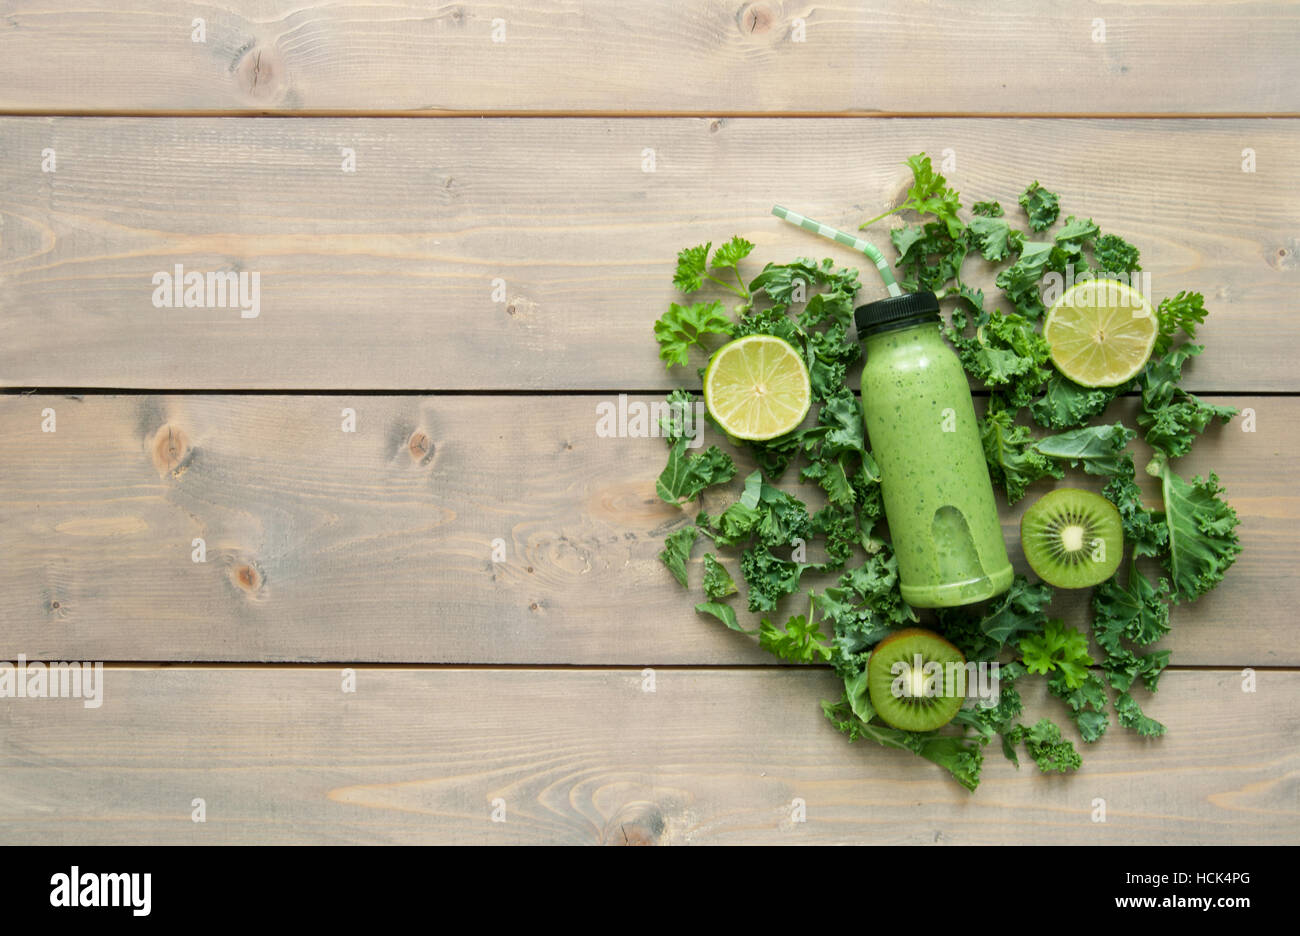 Boisson dans un smoothie vert bouteille sur une table en bois avec des ingrédients Banque D'Images